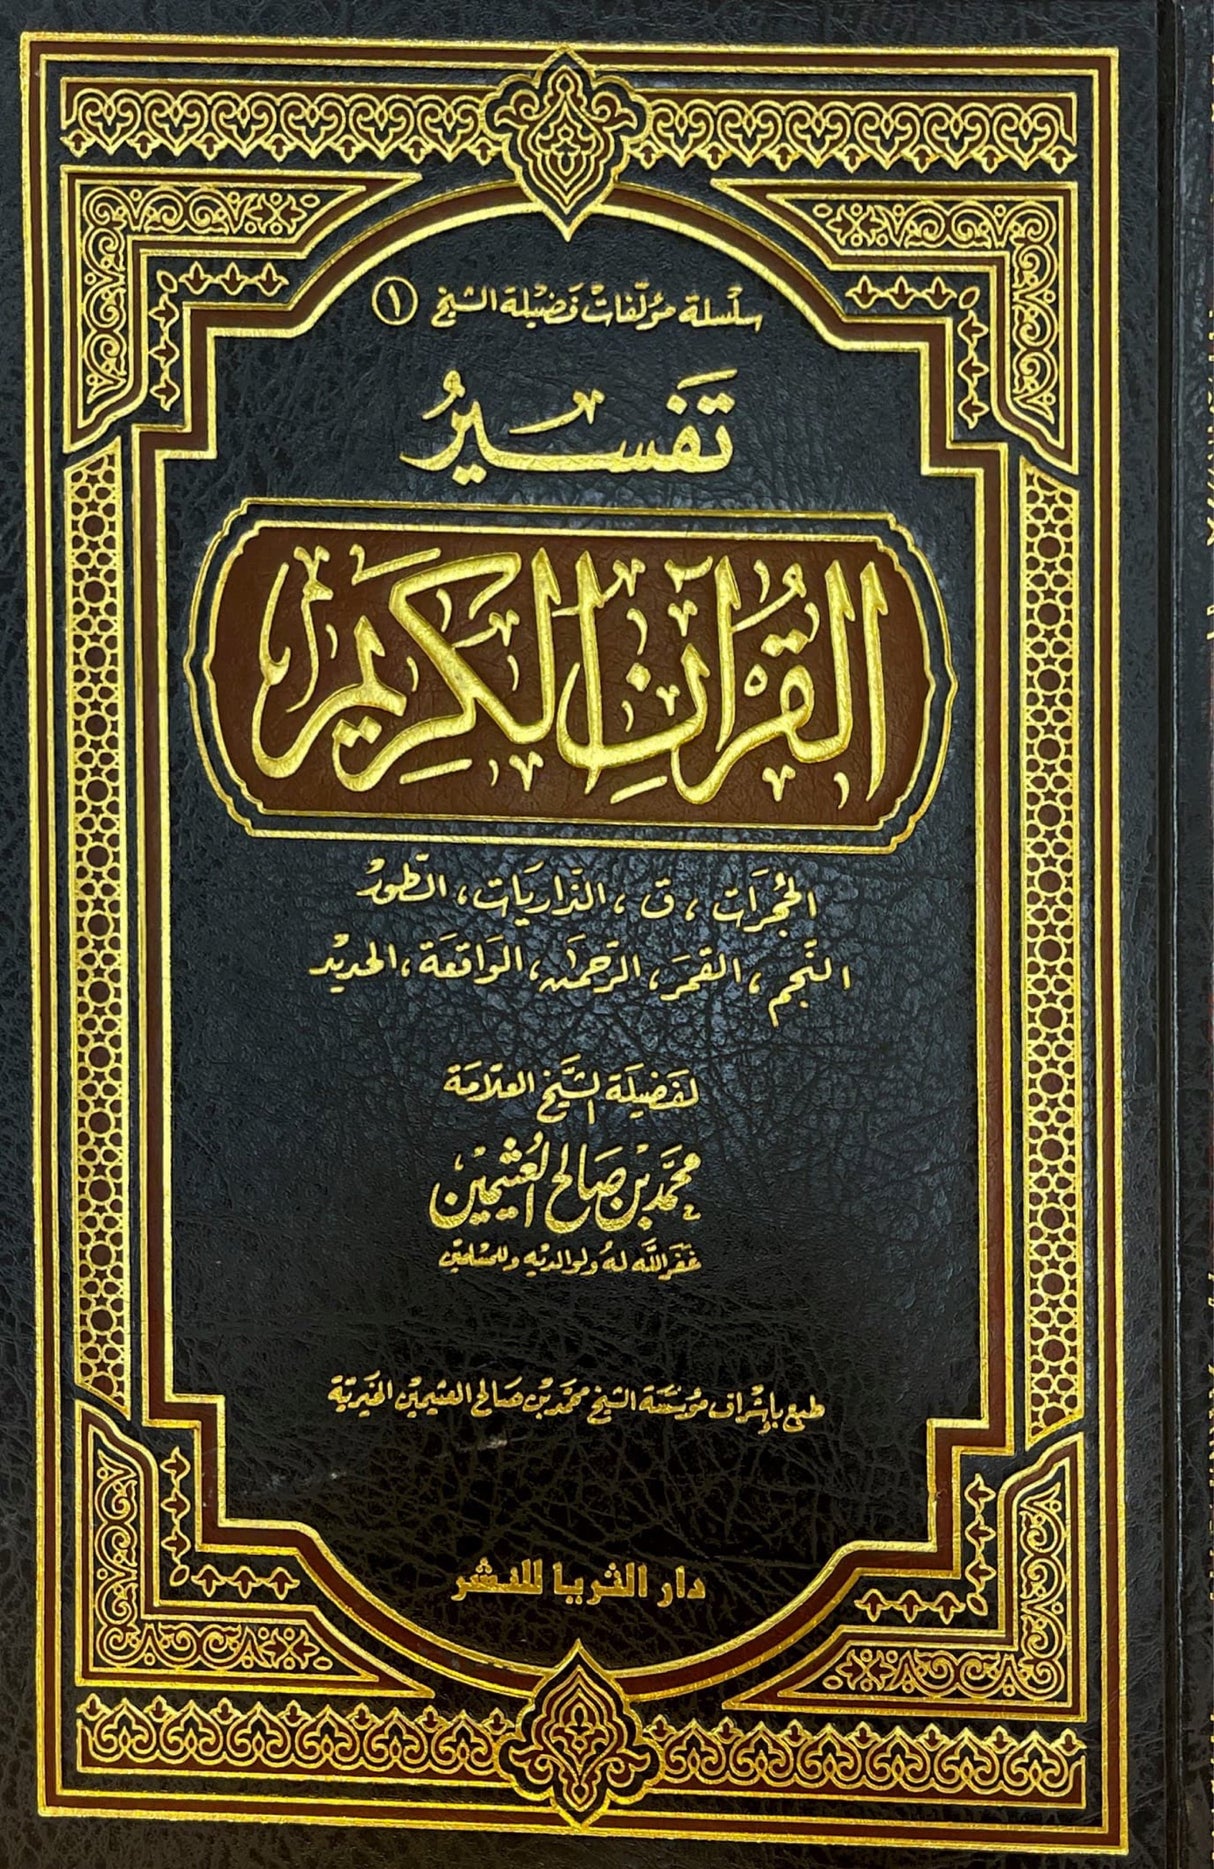 تفسير القران الكريم - حجرات الى الحديد   Tafsir Al Quran Al Karim - Surah al Hujurat to Surah al Hadeed